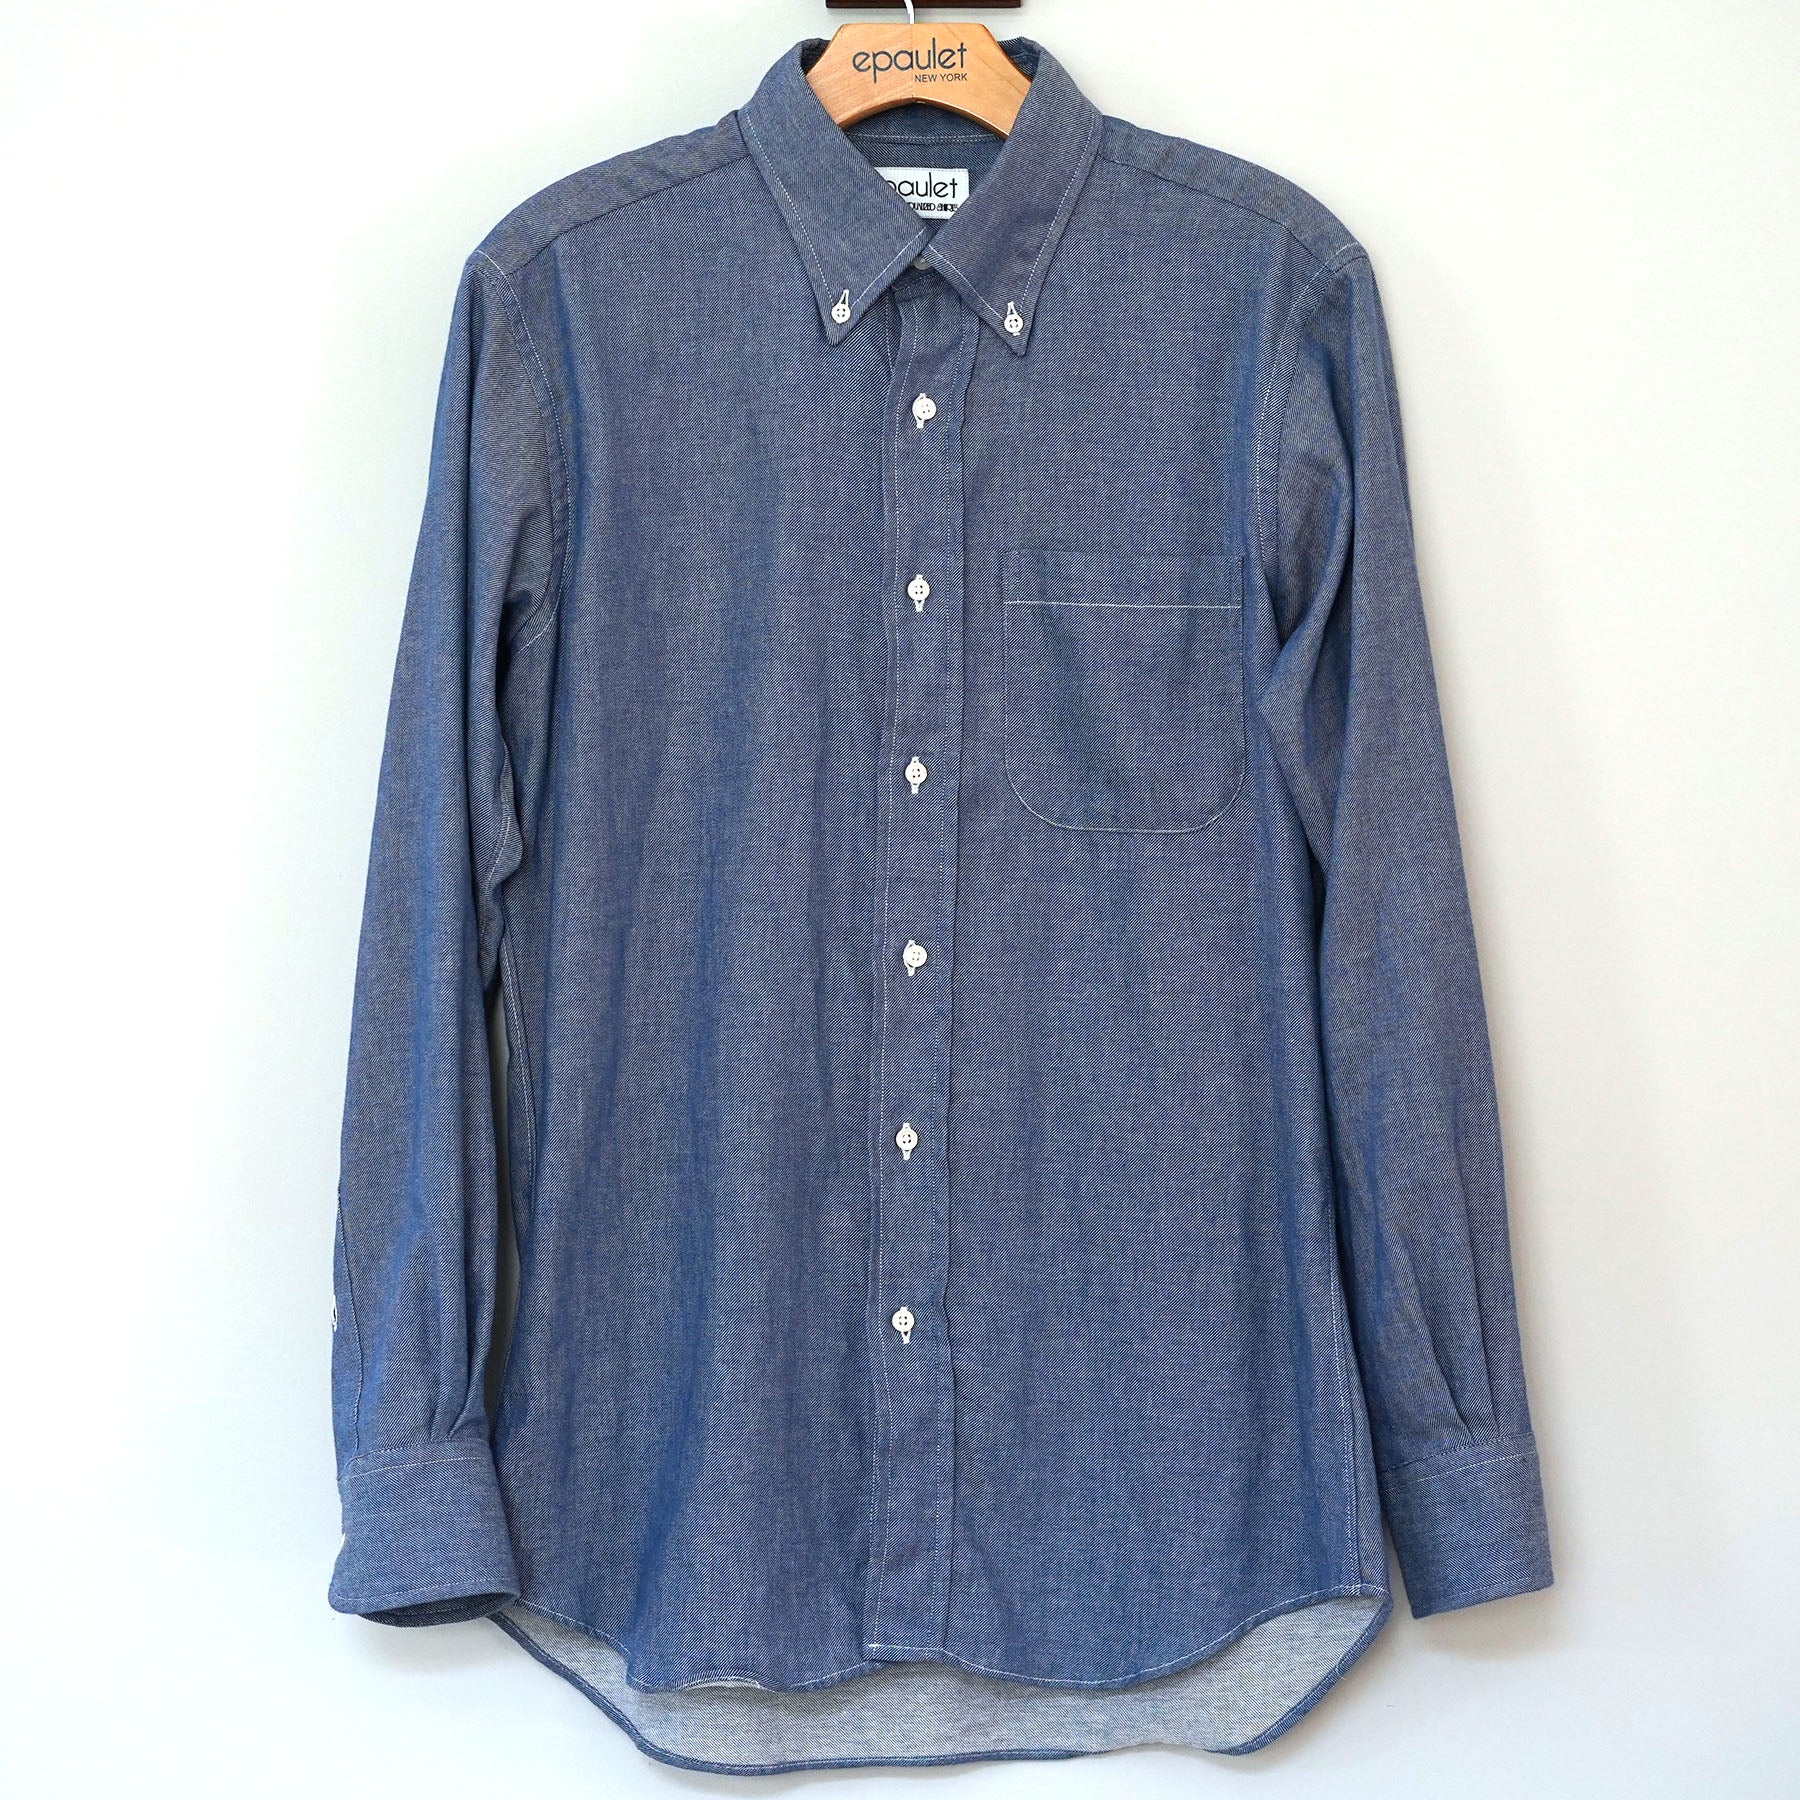 Sample Sale: Lightweight Japanese Denim Shirt Medium